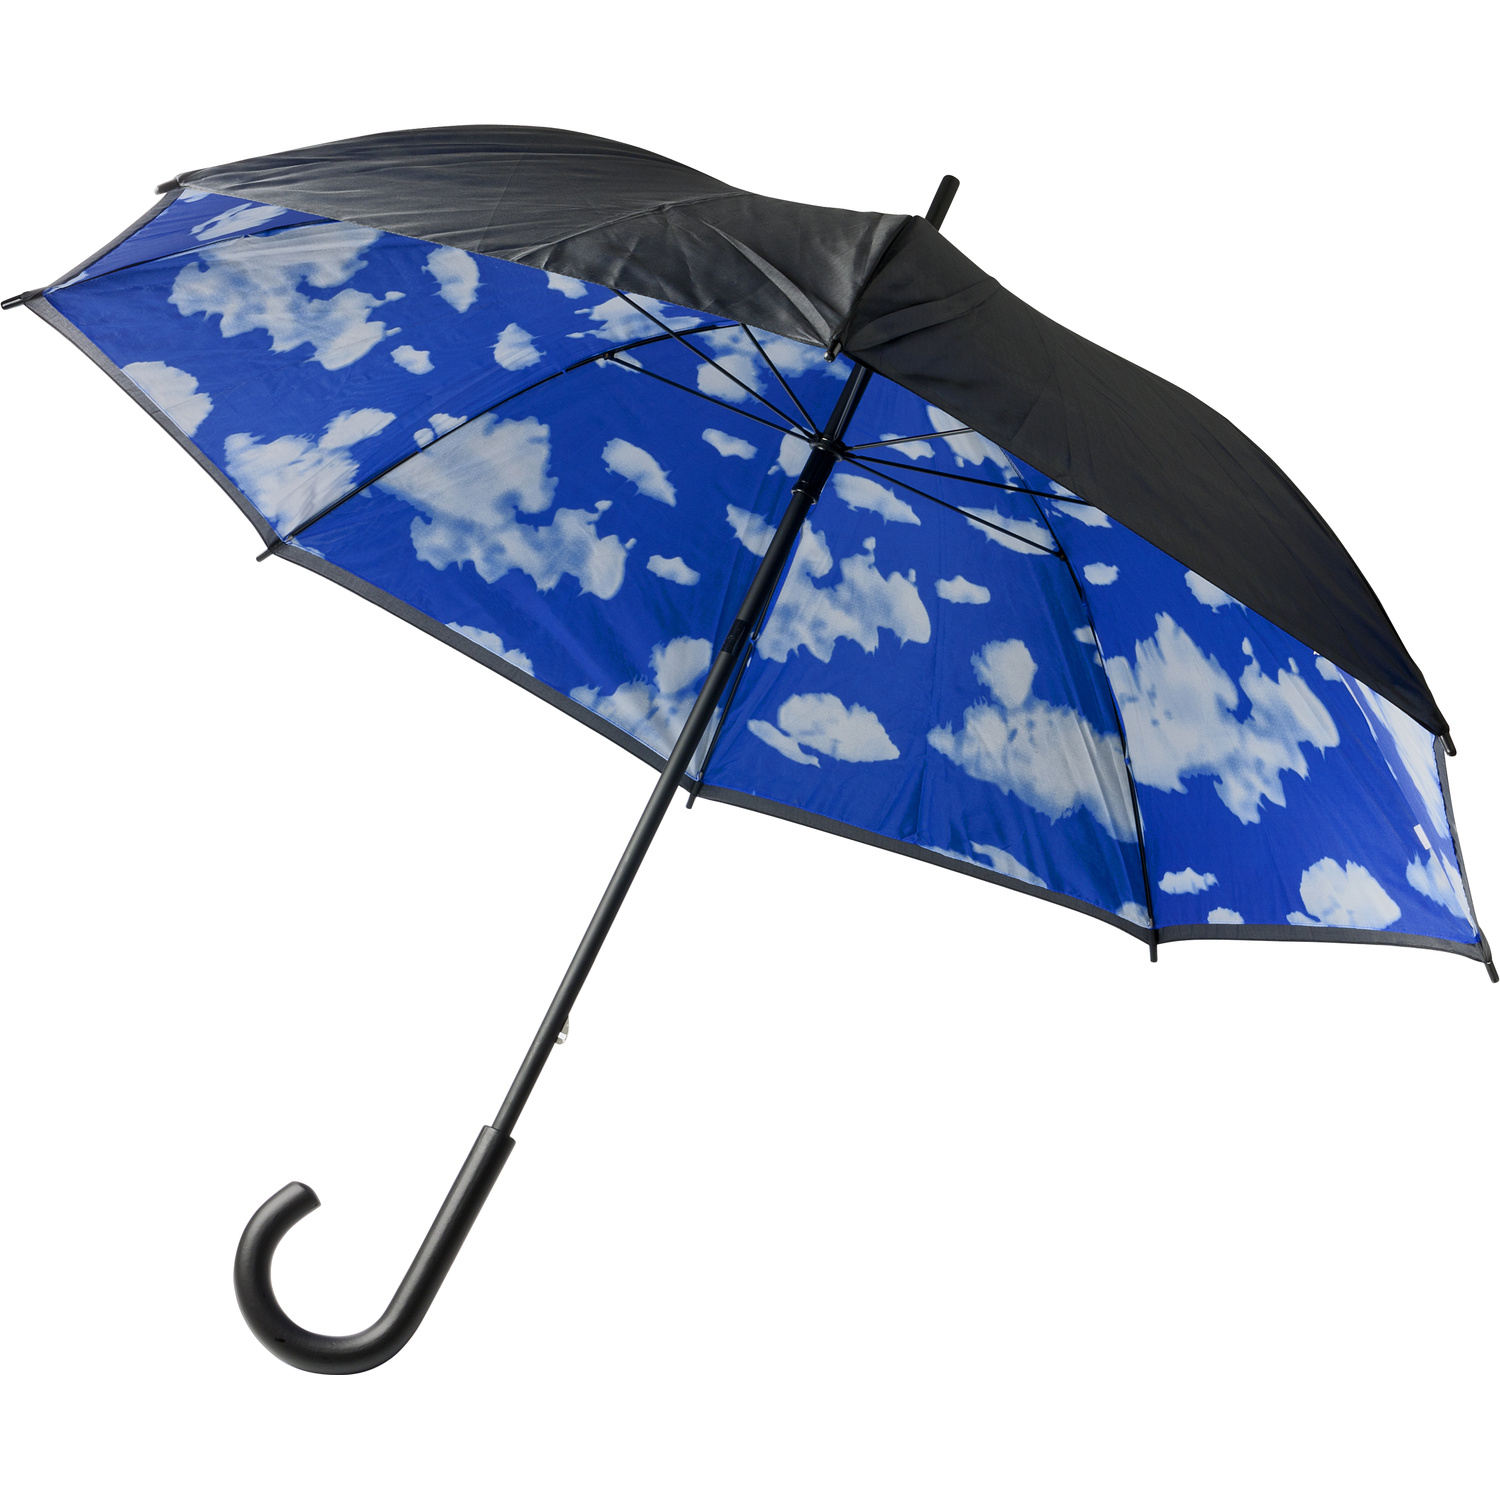 004136 018999999 3d045 ins pro01 fal - Automatic umbrella